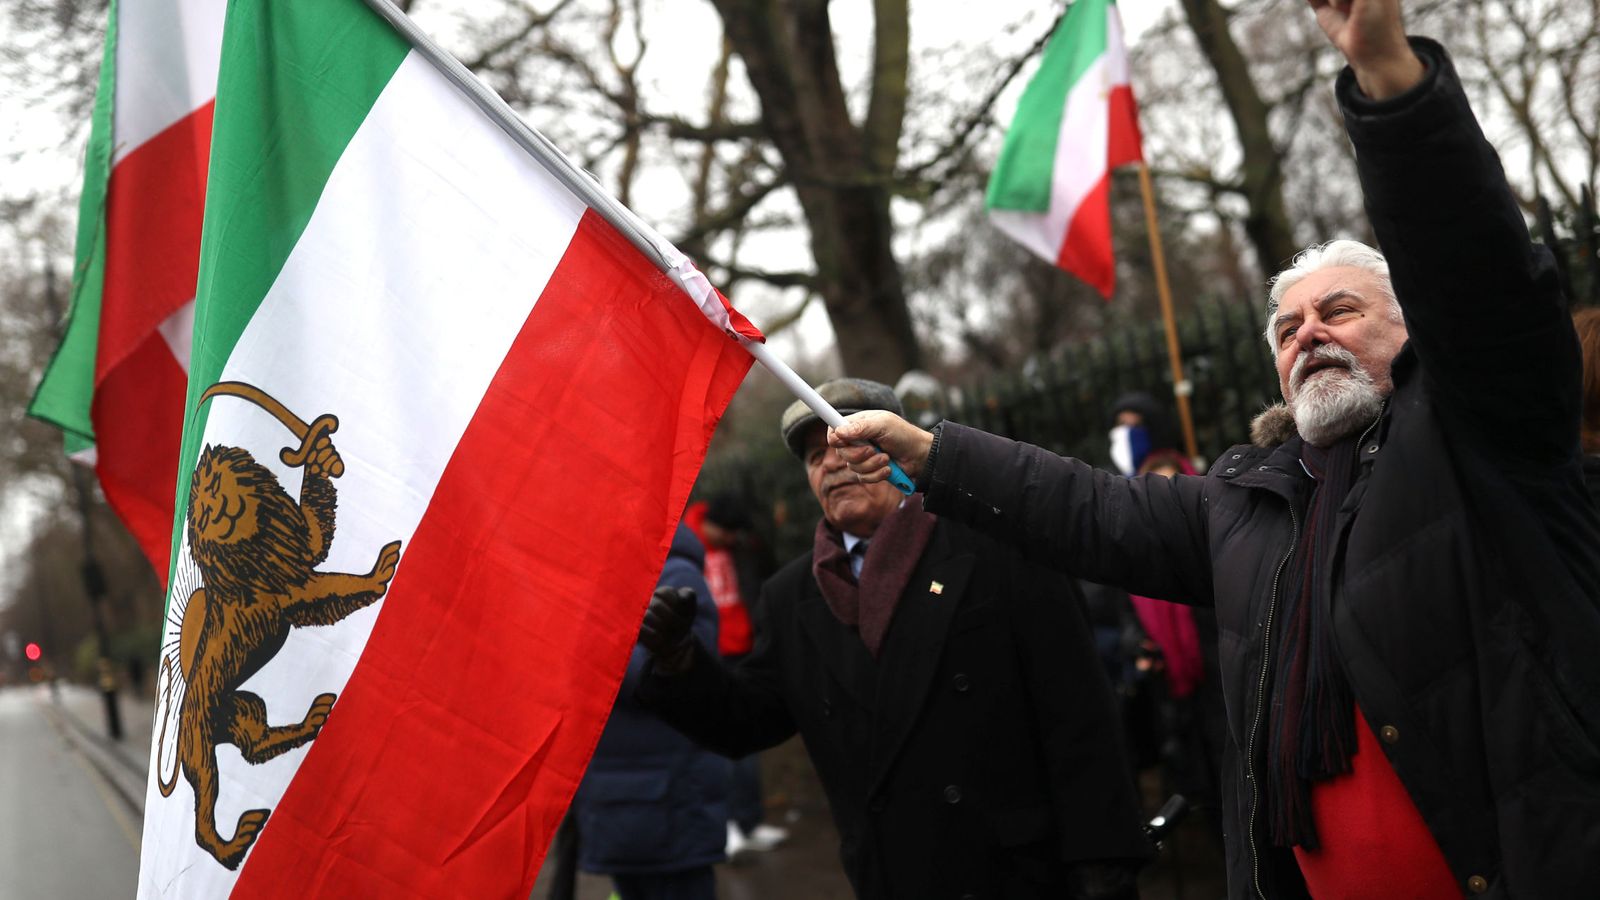 Foto: Iraníes exiliados protestan contra el régimen presidido por Hasan Rohaní frente a la embajada de Irán en Londres, el 2 de enero de 2018. (Reuters)